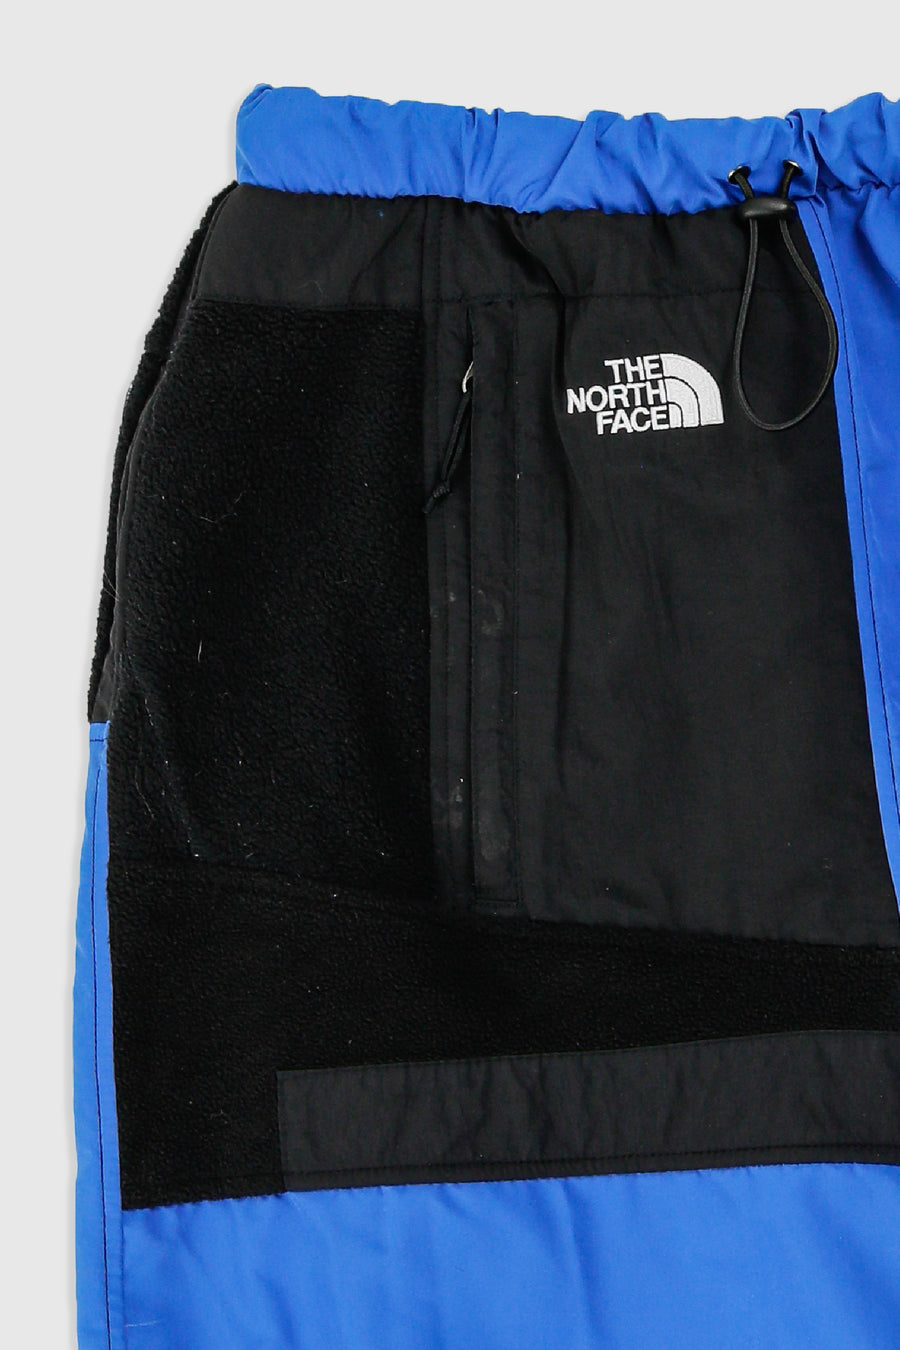 Rework North Face Fleece Long Skirt - XS, S, M, L, XL, XXL